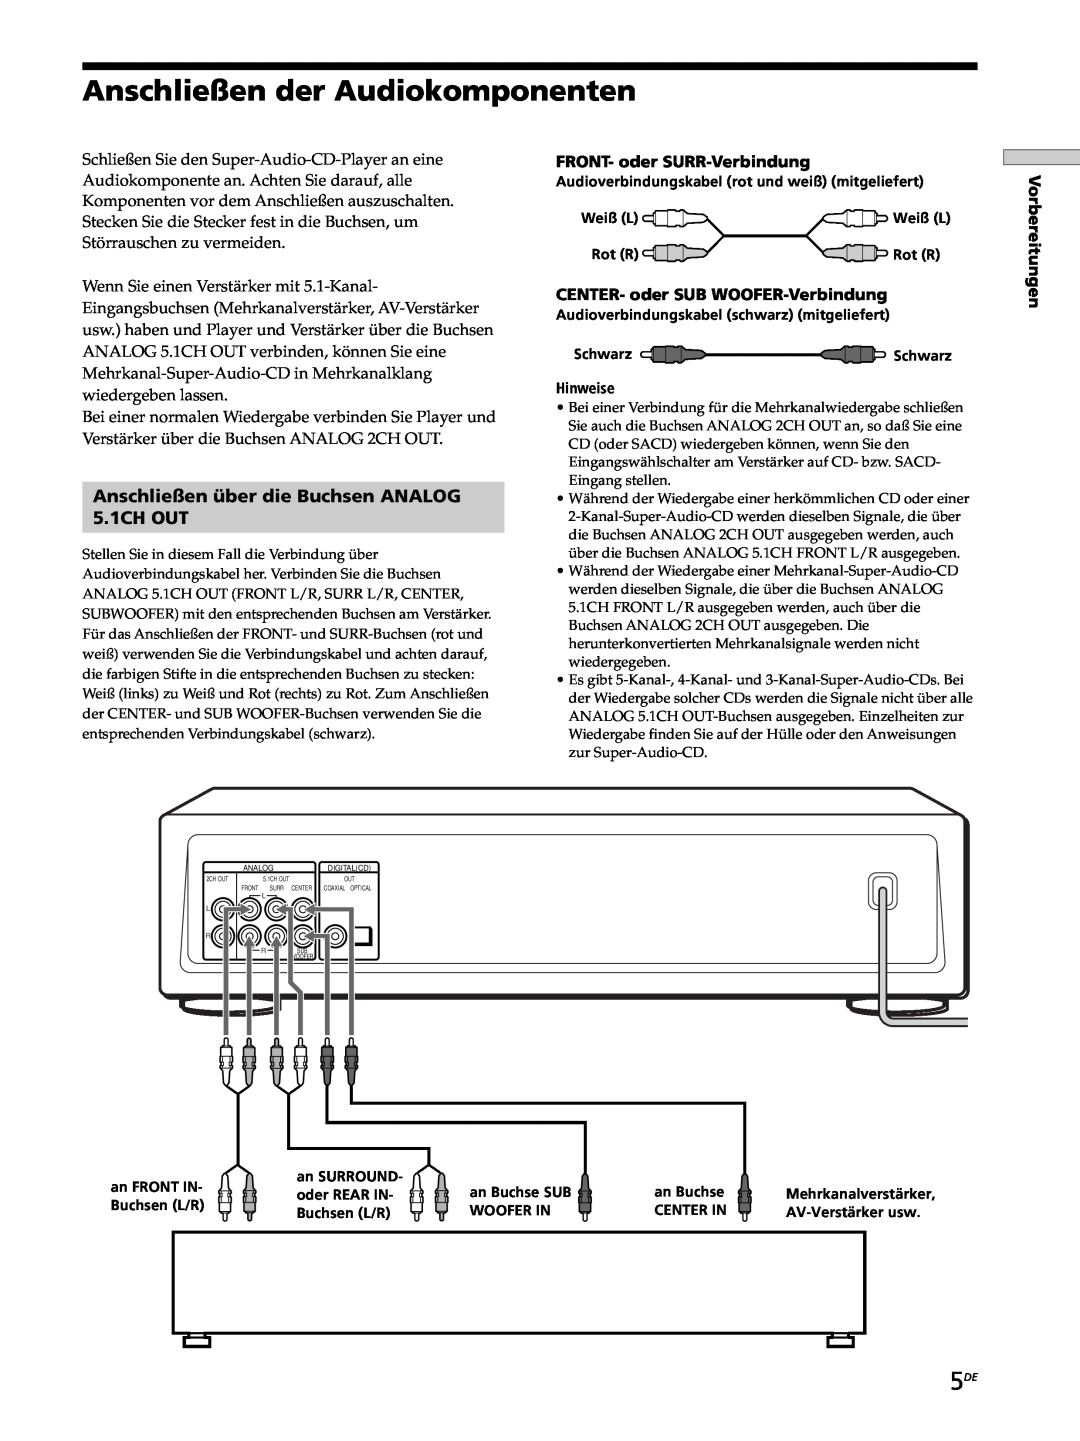 Sony SCD-XB770 Anschließen der Audiokomponenten, Anschließen über die Buchsen ANALOG 5.1CH OUT, Weiß L, Rot R, Woofer In 